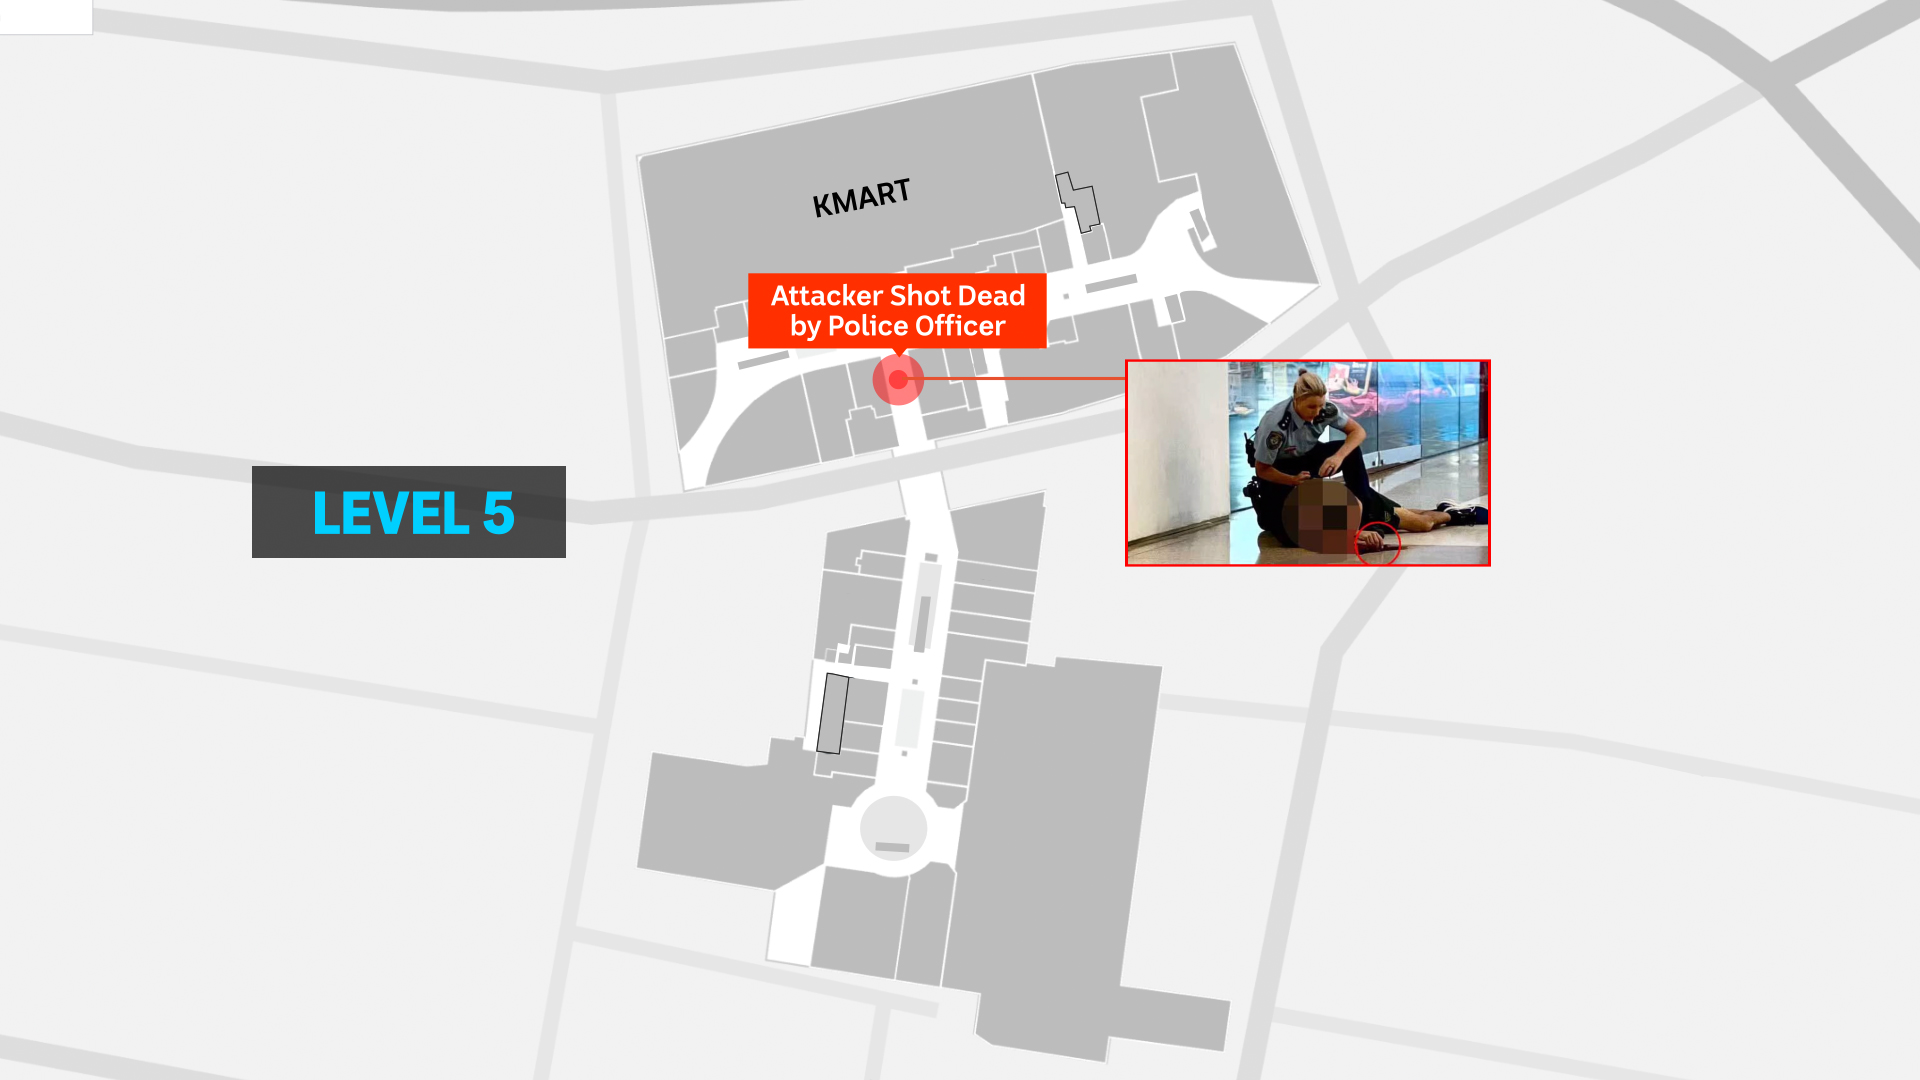 Mapa dentro de Westfield Bondi Junction que muestra dónde fue asesinado un hombre armado, las imágenes insertadas muestran a una mujer policía sobre el cuerpo